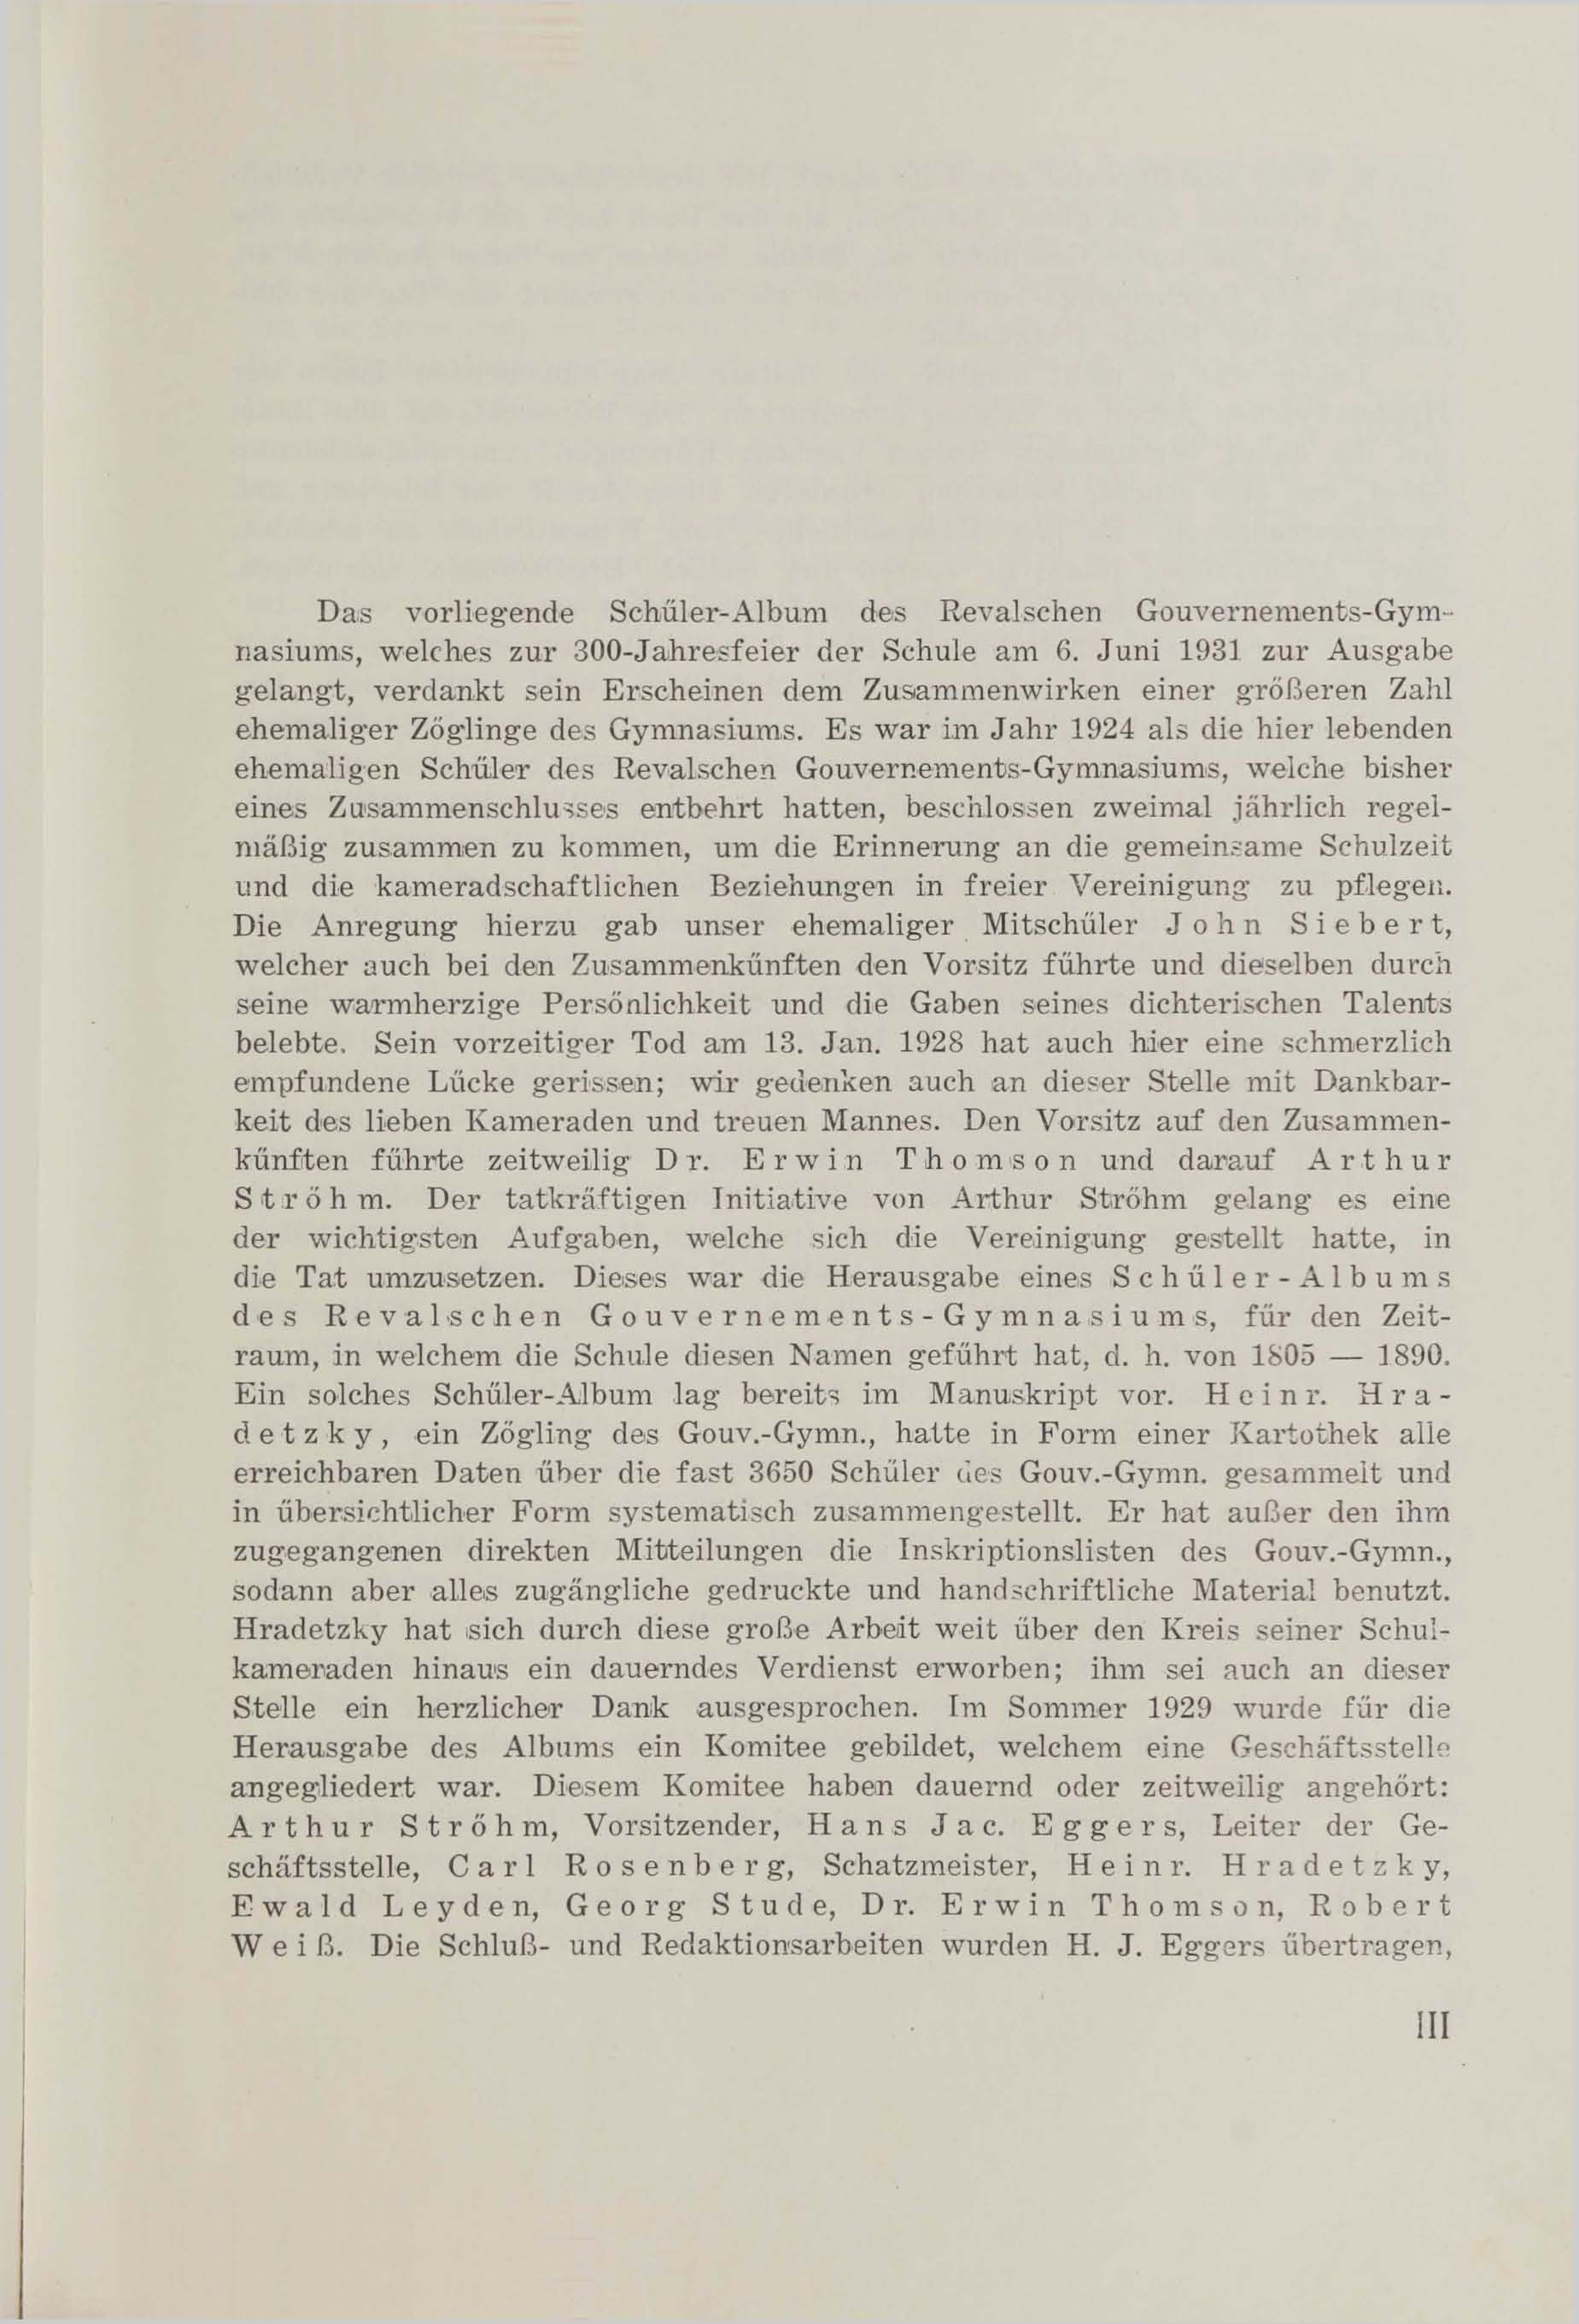 Schüler-Verzeichnis des Revalschen Gouvernements-Gymnasiums 1805–1890 (1931) | 5. (III) Main body of text